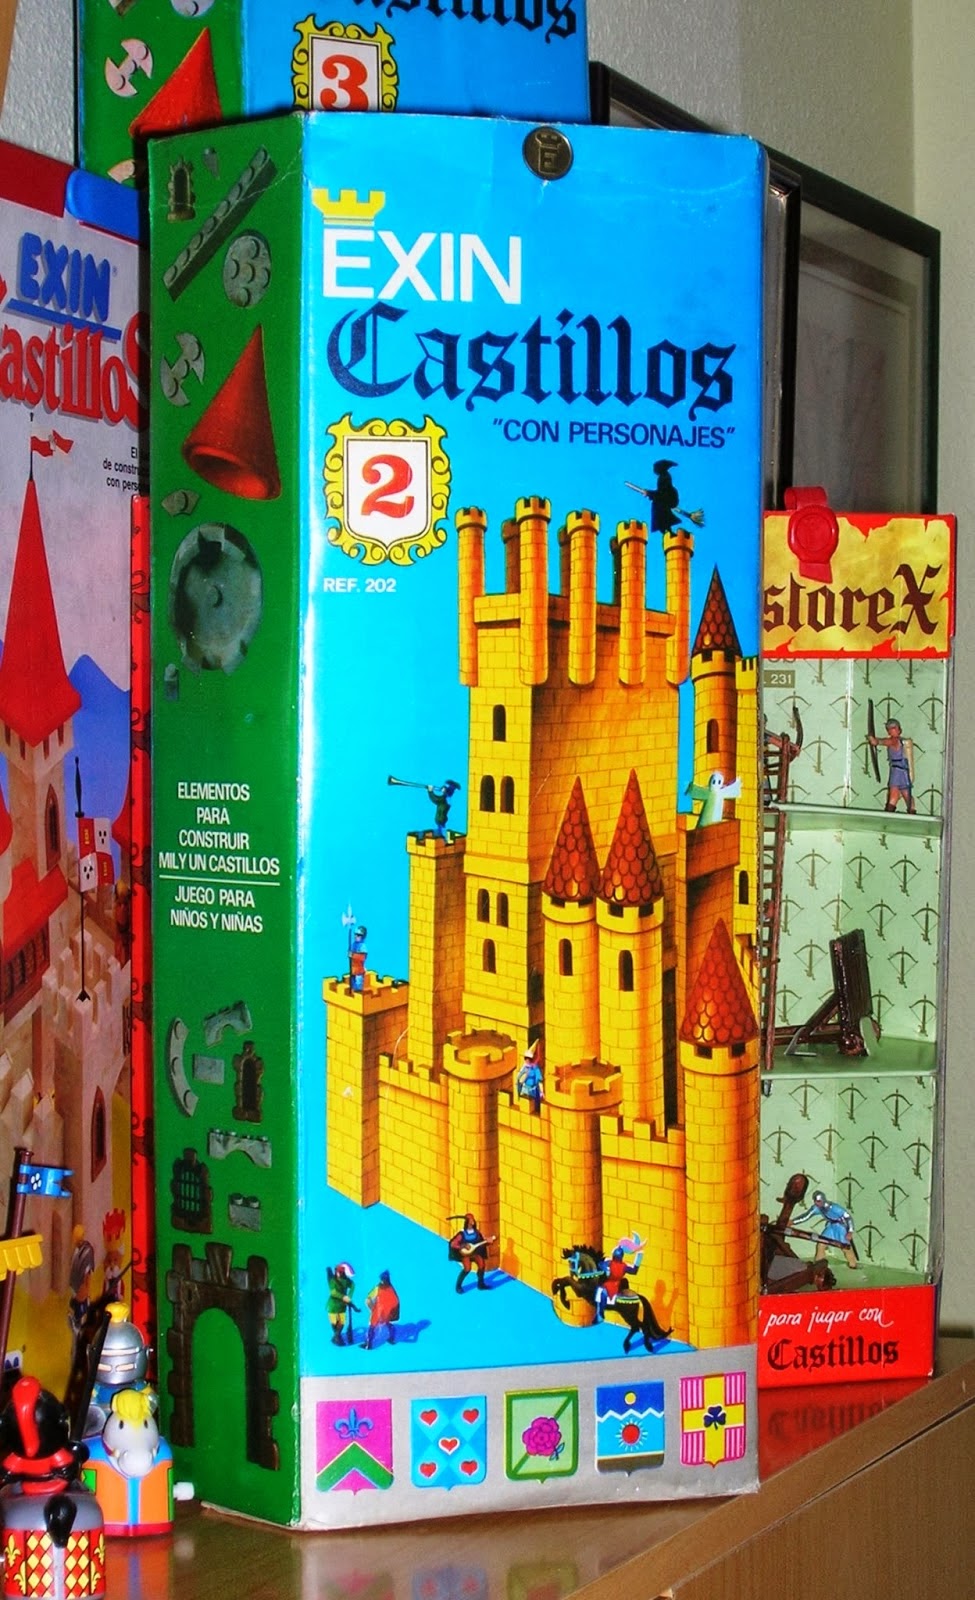 Exin Castillos Serie Azul 1 Con Caja Vintage Exinmex